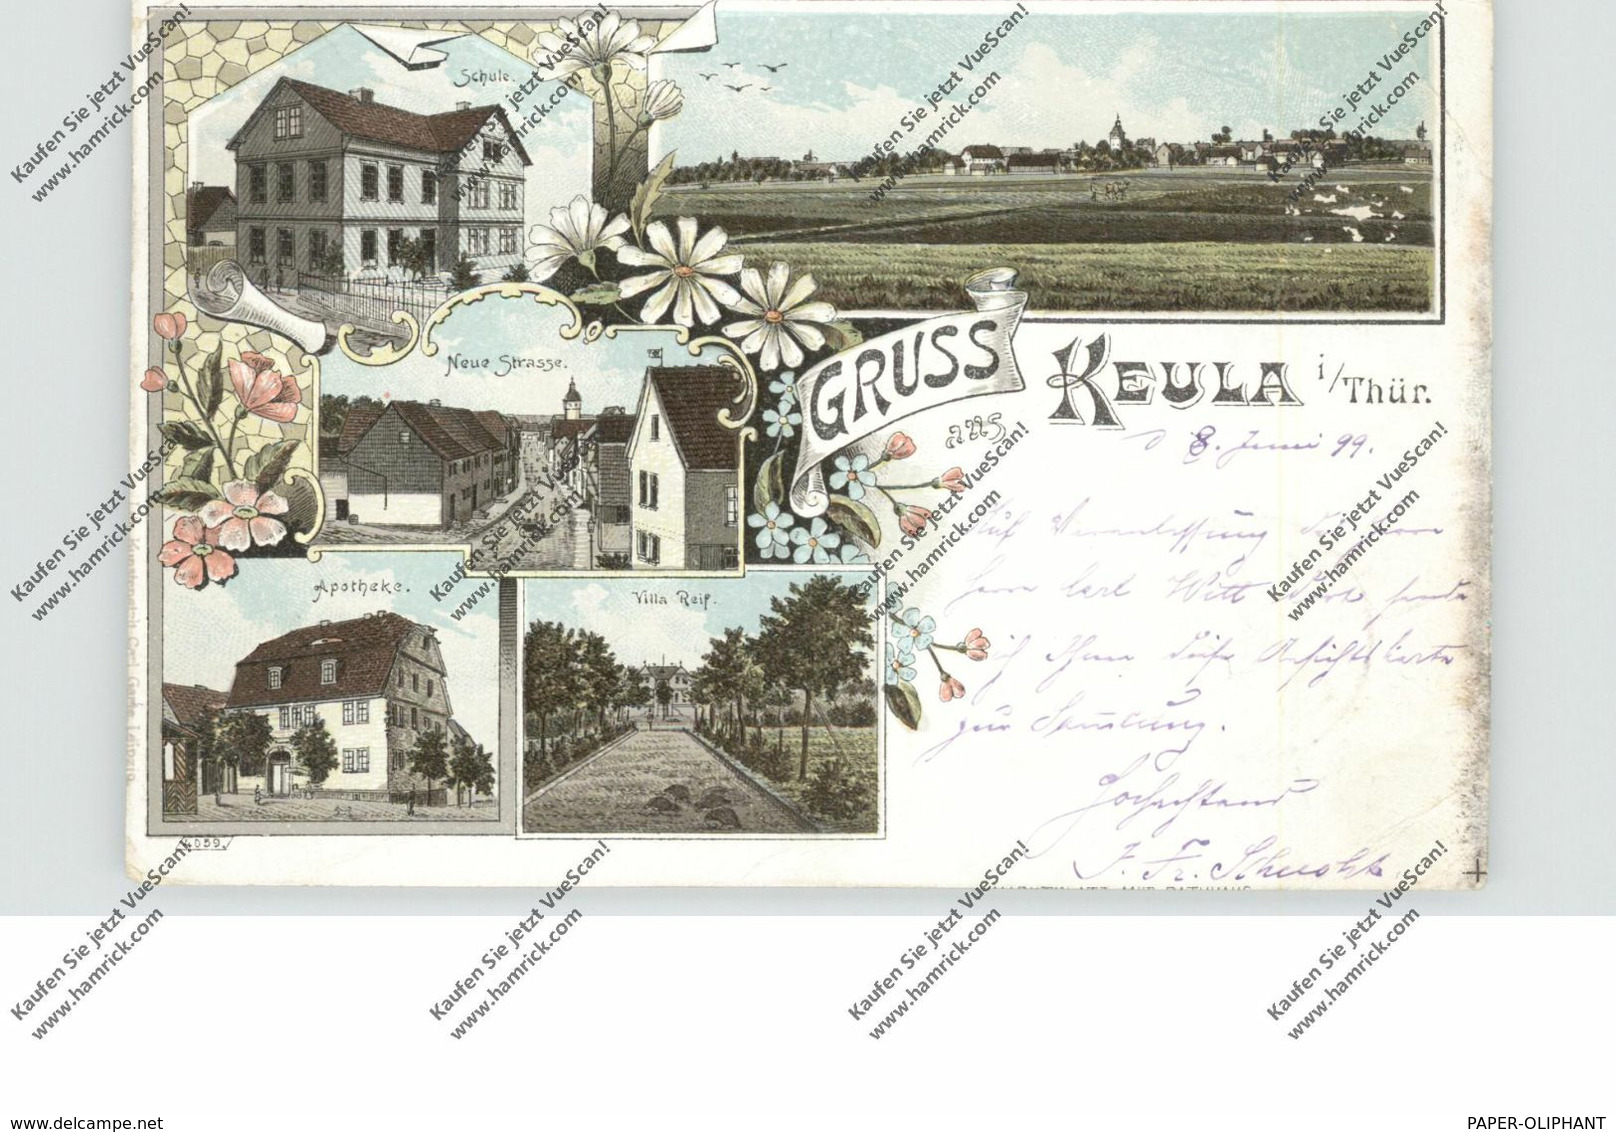 0-5401 HELBEDÜNDORF - KEULA, Lithographie 1899, Villa Reif, Apotheke, Schule, Neue Strasse, Gesamtansicht - Sondershausen